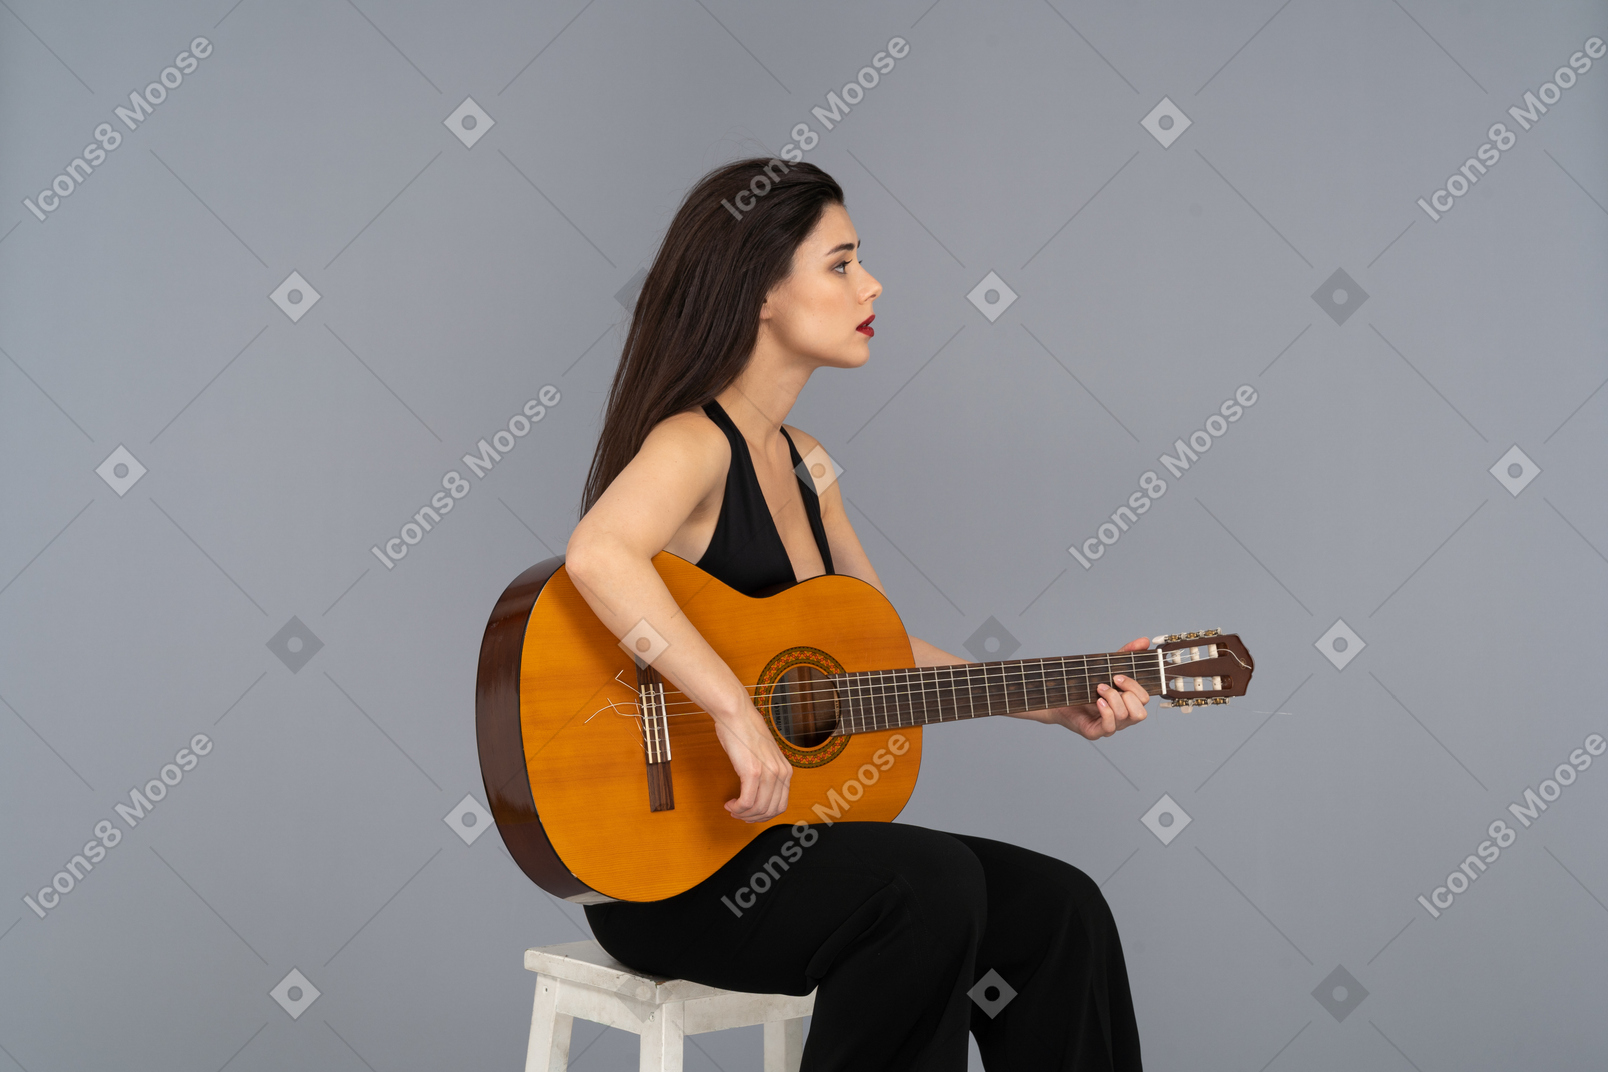 Vista de tres cuartos de una joven sentada en traje negro tocando la guitarra